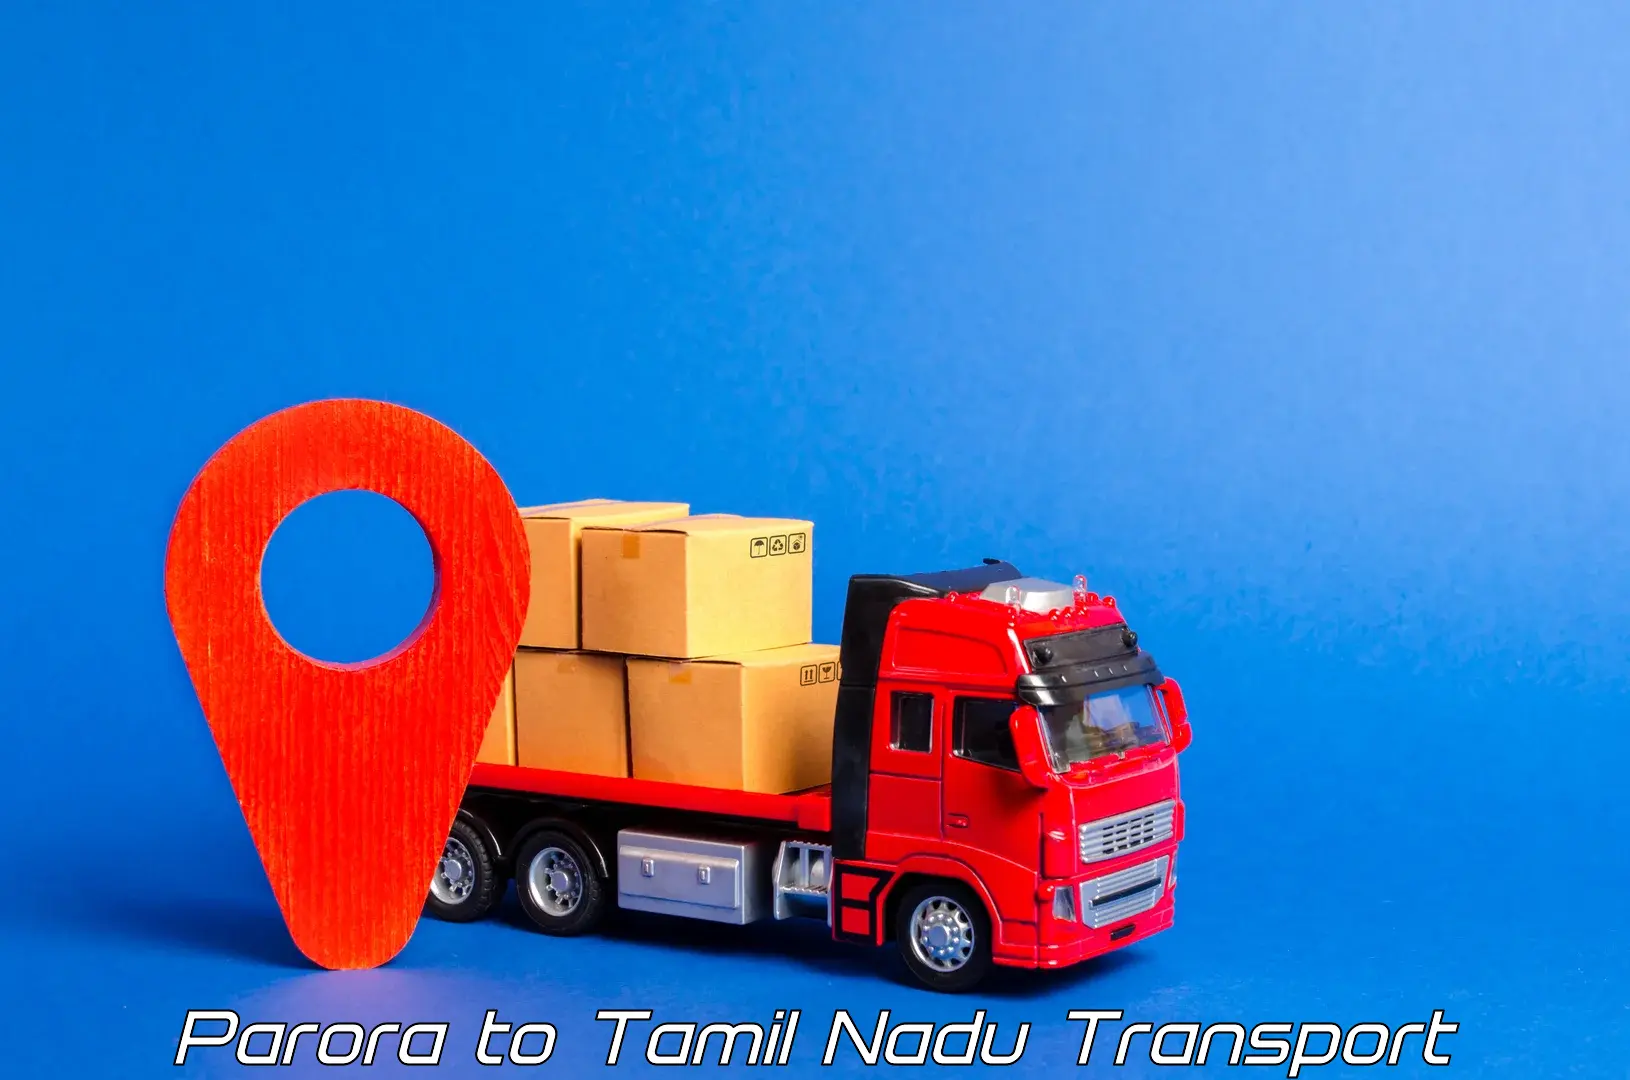 Transport services Parora to Tiruvarur